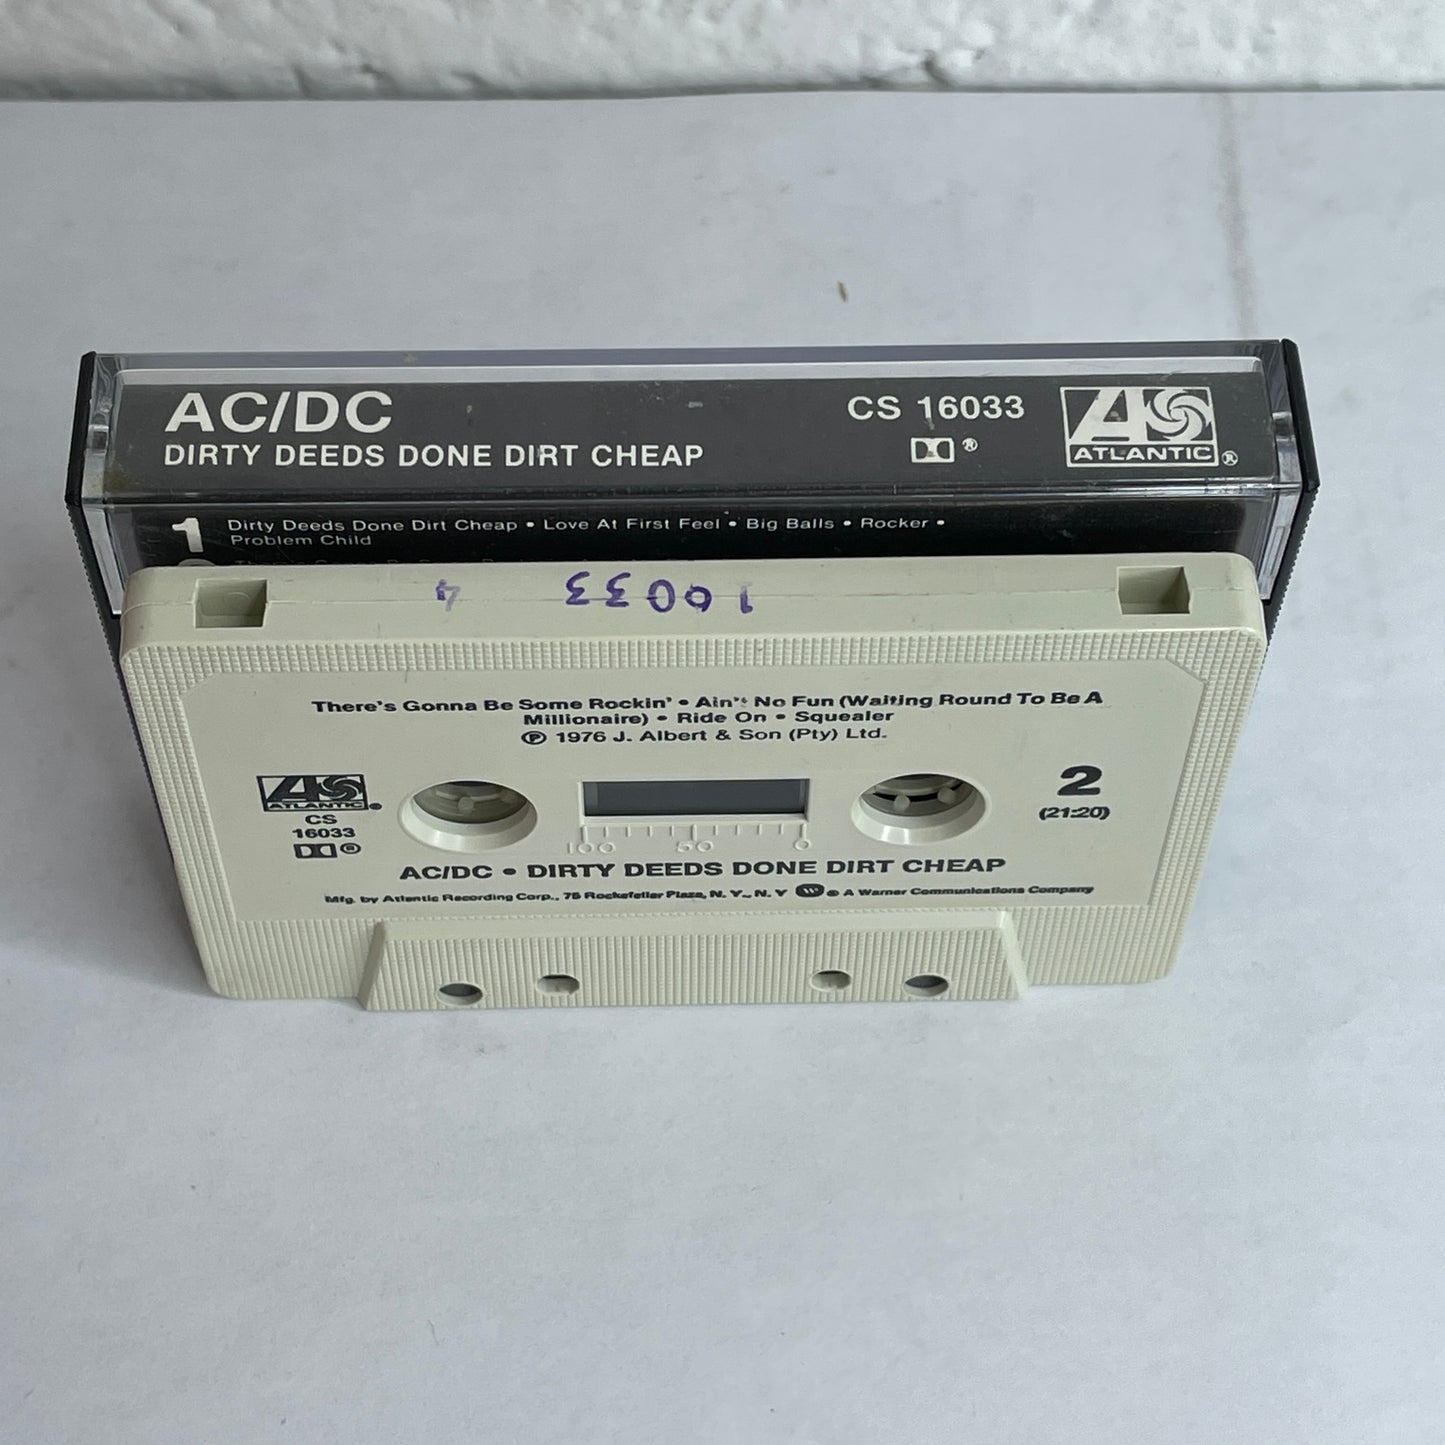 AC/DC - Dirty Deeds Done Dirt Cheap original cassette tape